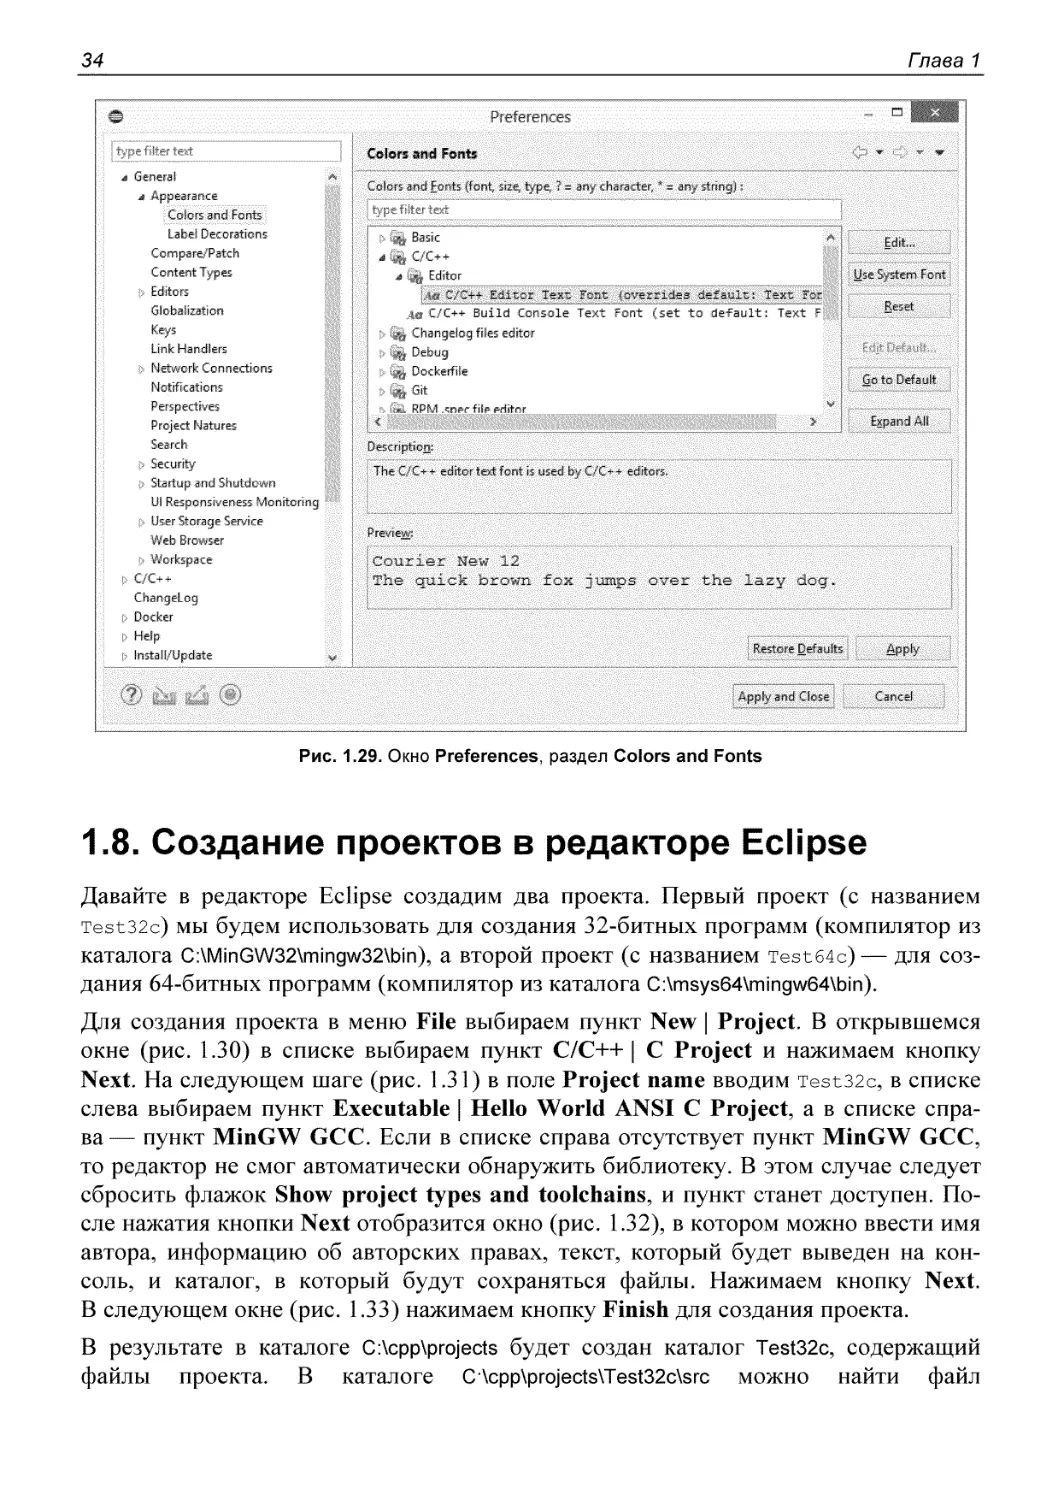 1.8. Создание проектов в редакторе Eclipse